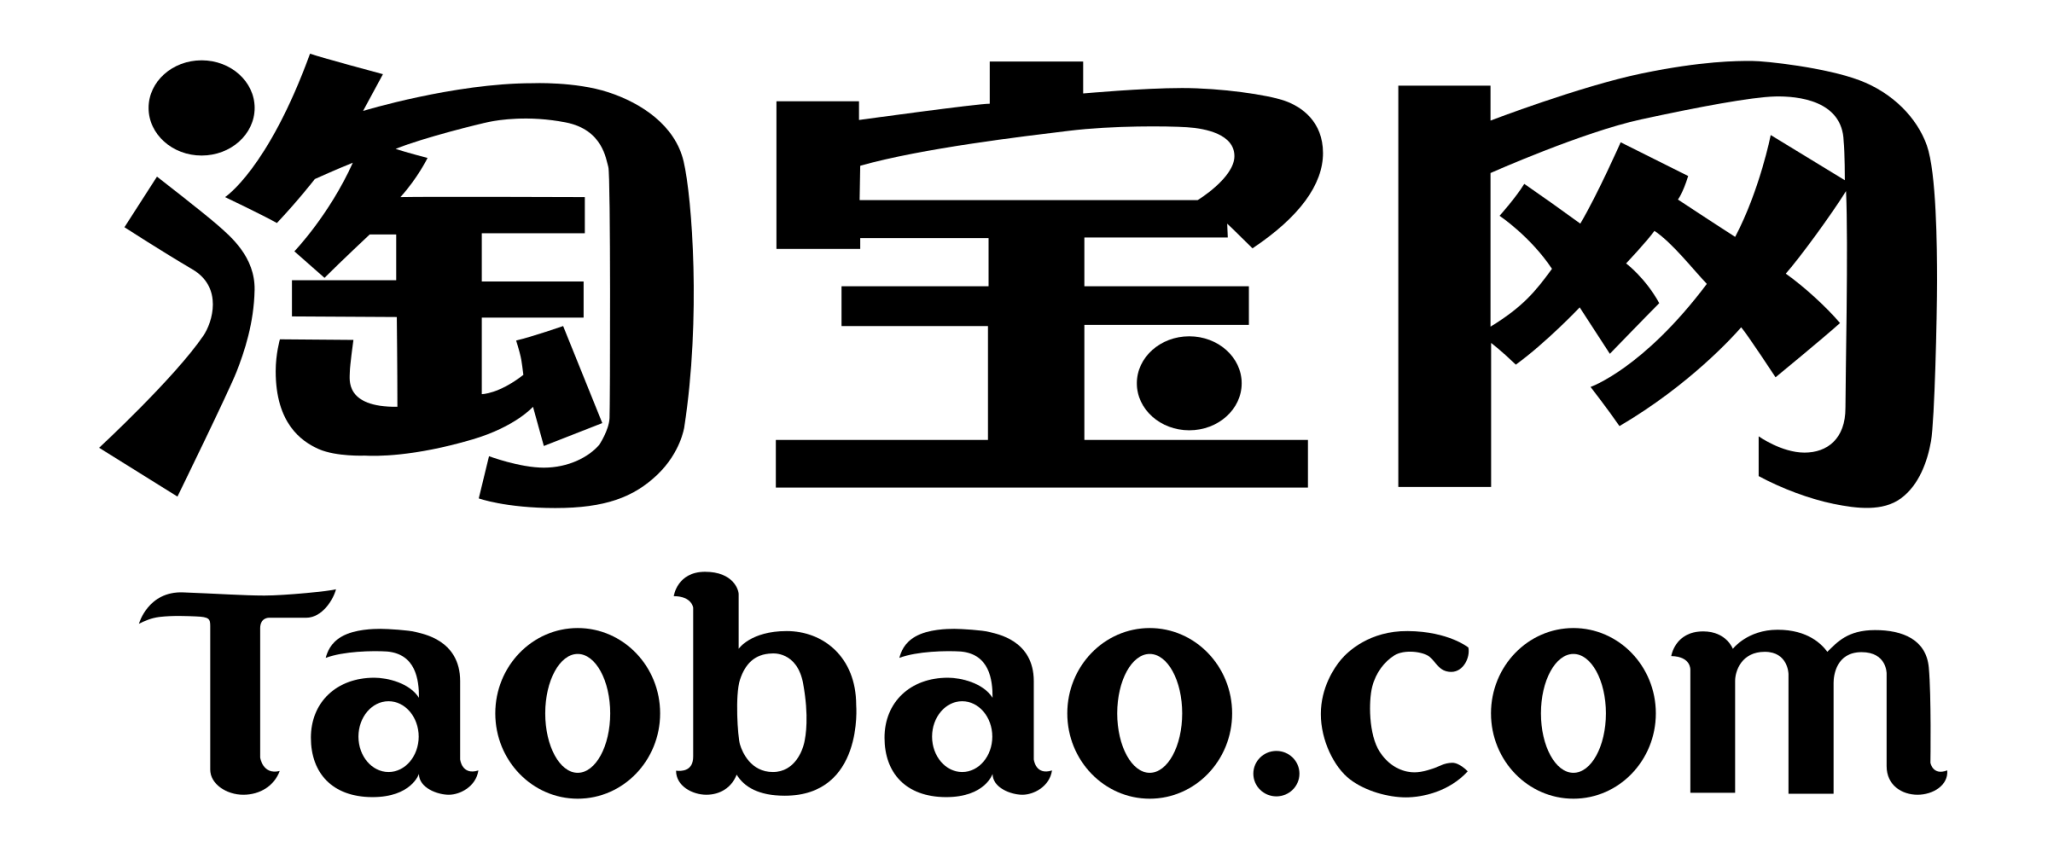 taobao-logo-black-transparent